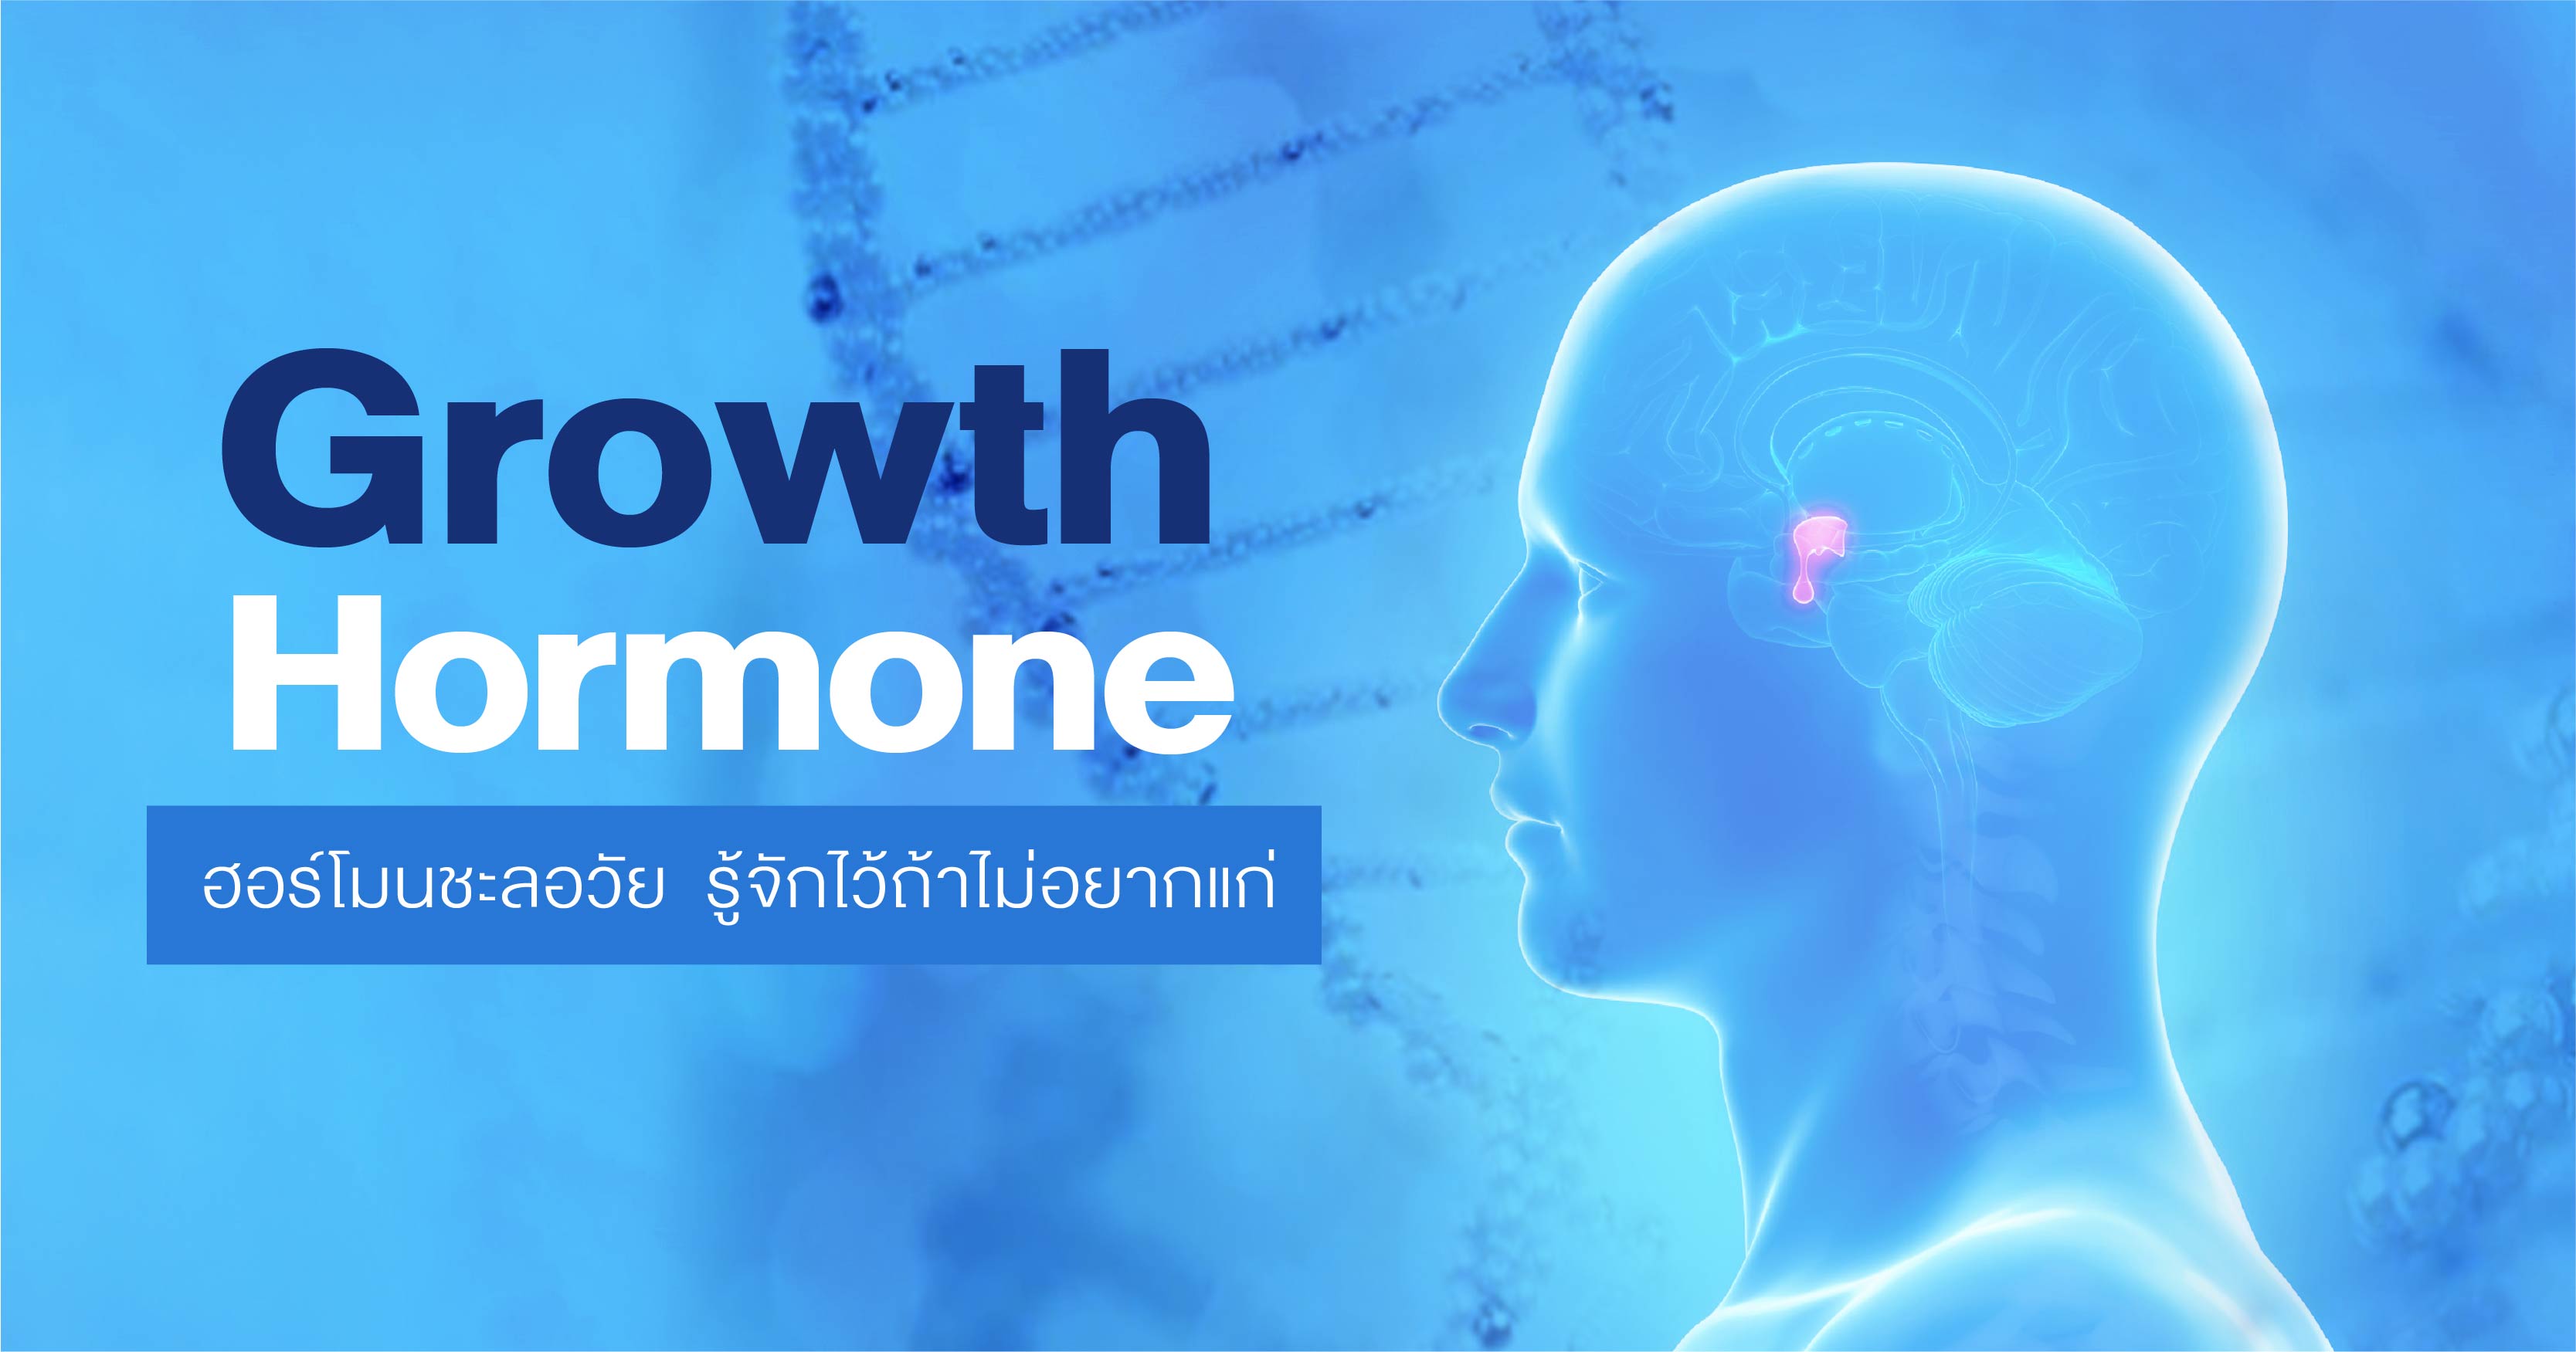 Growth Hormone    ฮอร์โมนชะลอวัย  รู้จักไว้ถ้าไม่อยากแก่ 